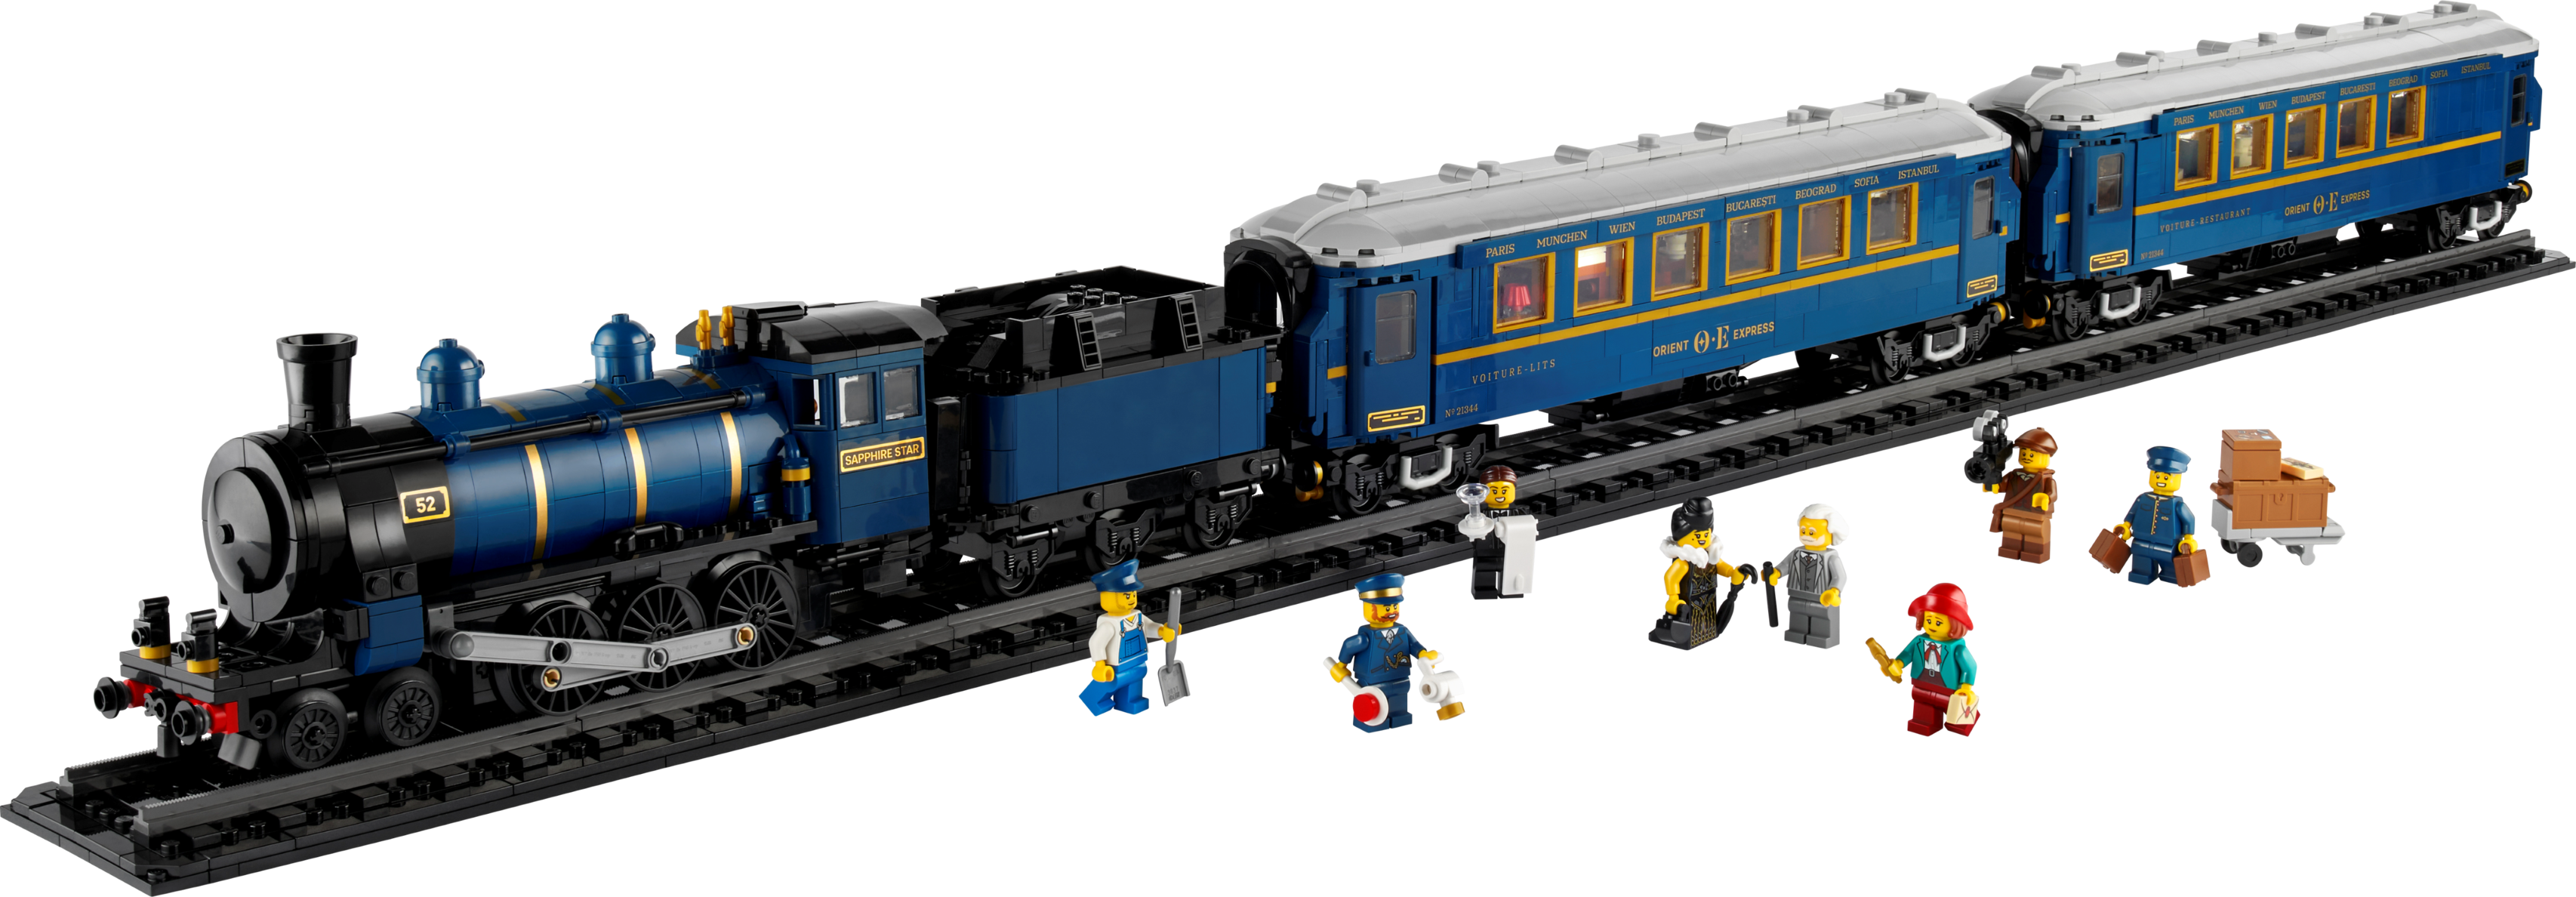 Aanbieding van De Oriënt-Express voor 299,99€ bij Lego